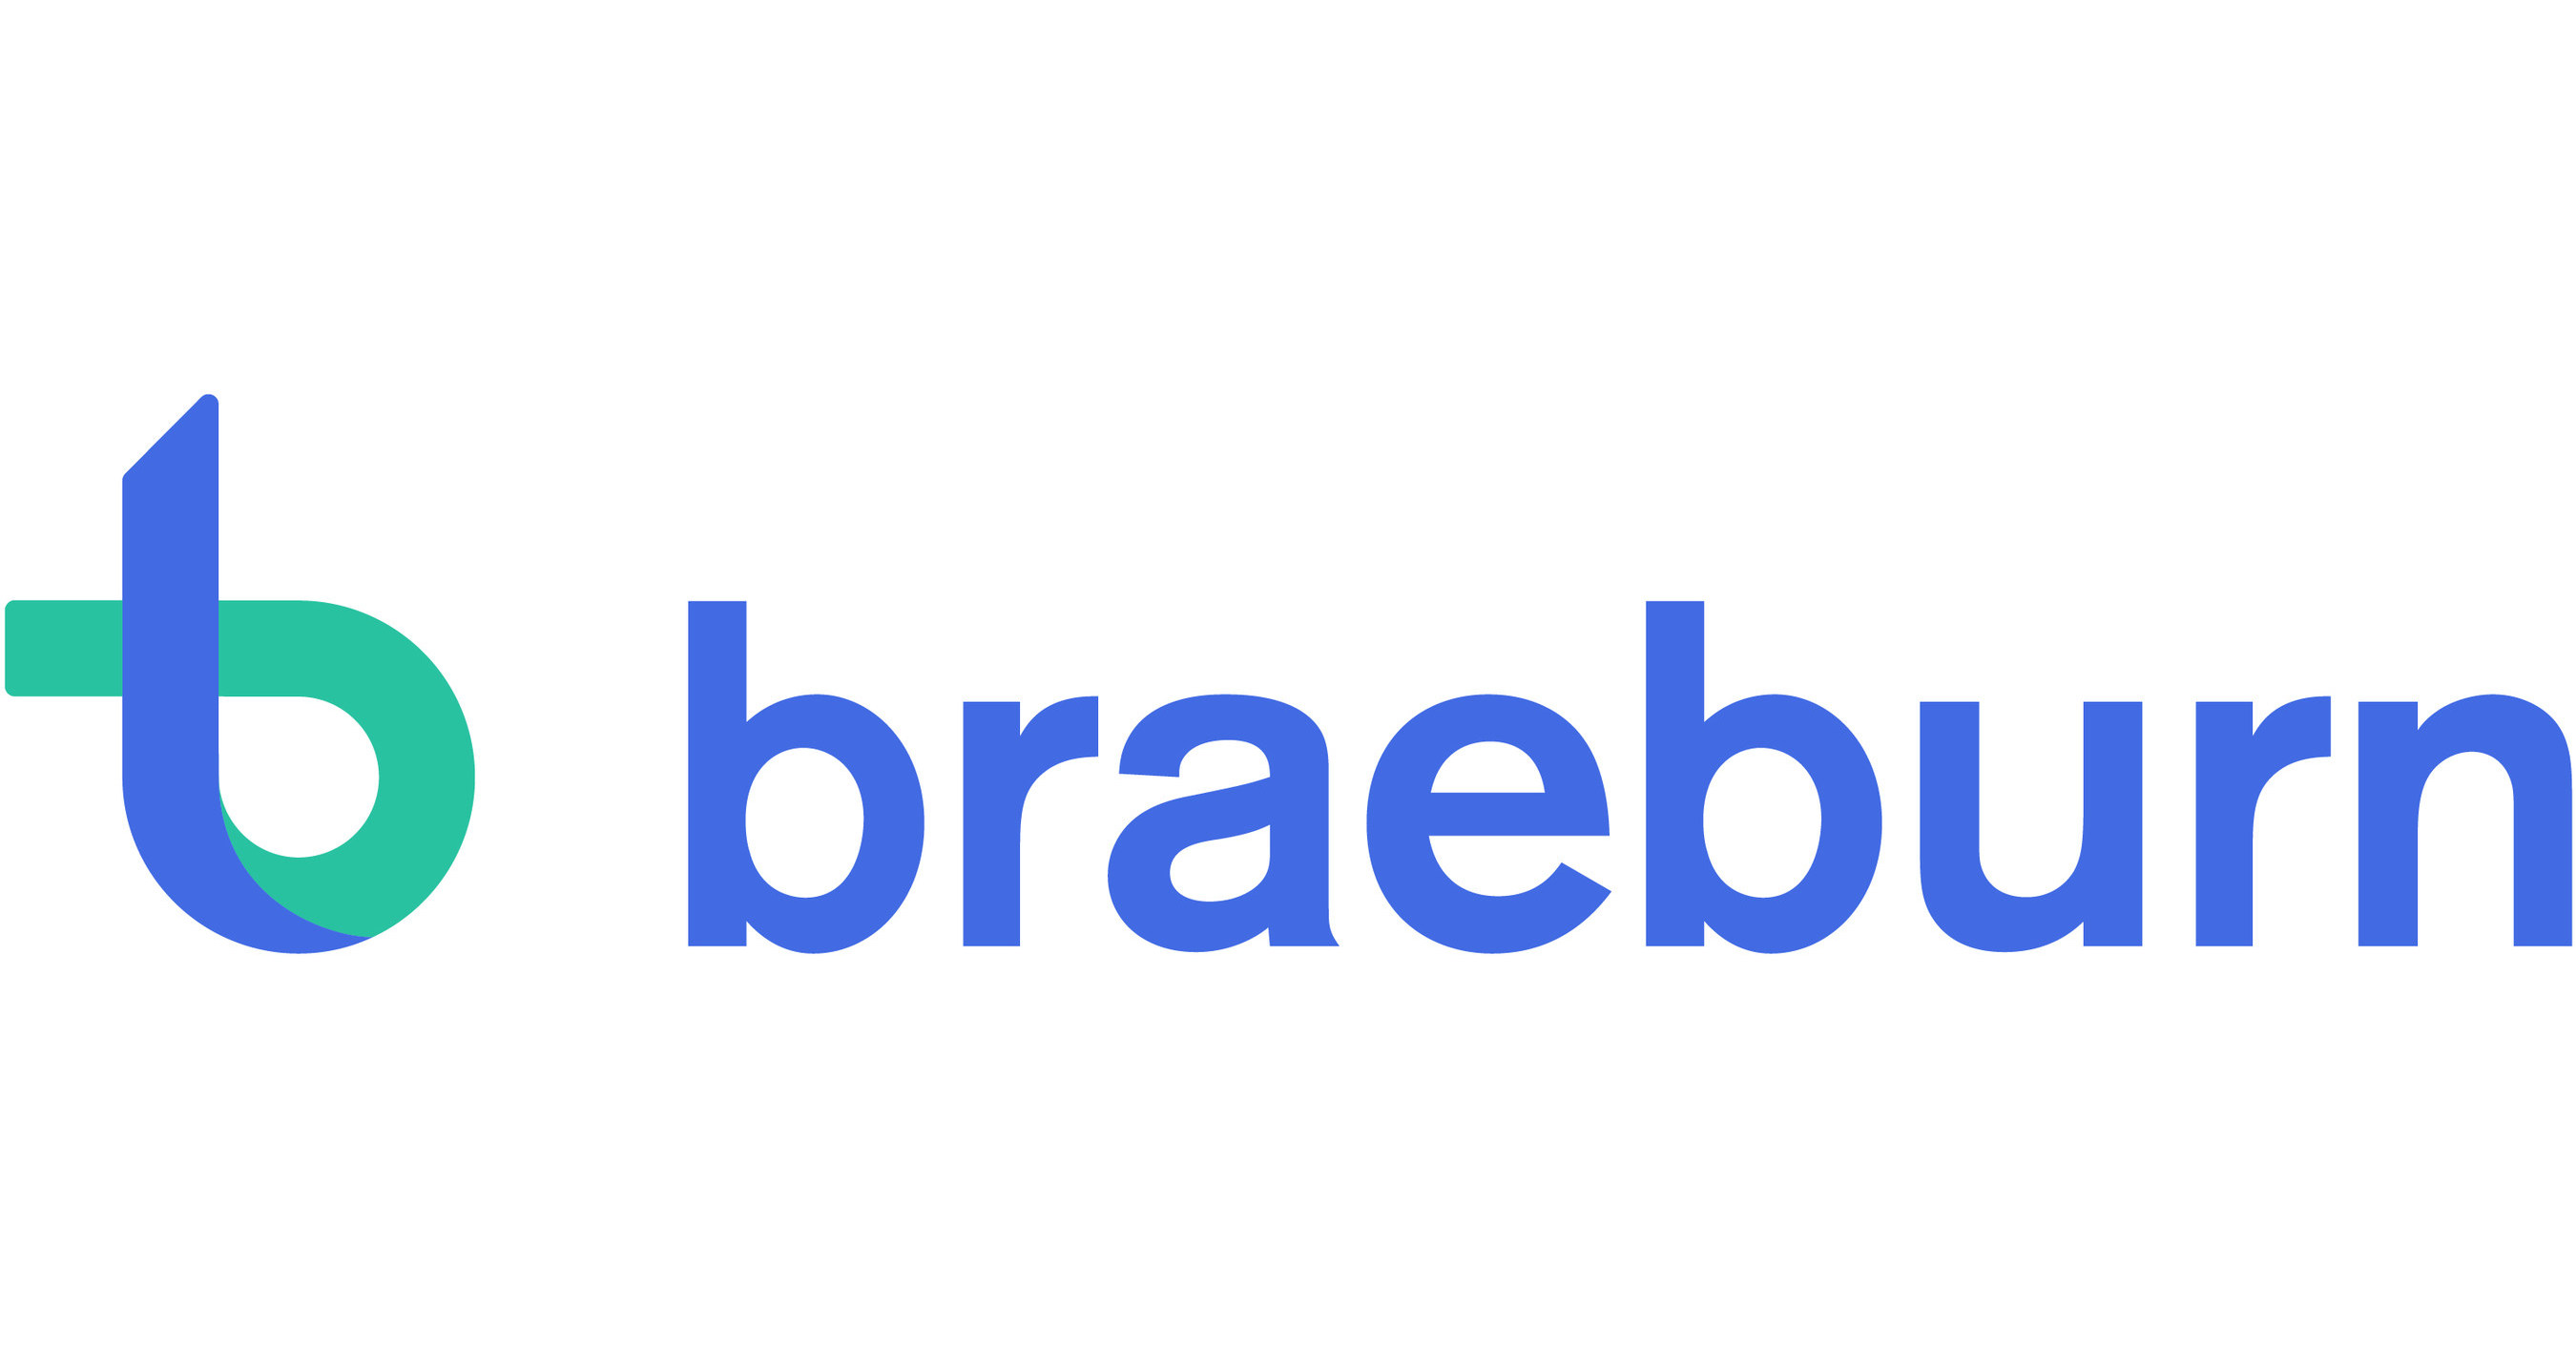 Braeburn pharmaceuticals ipo best investment purses